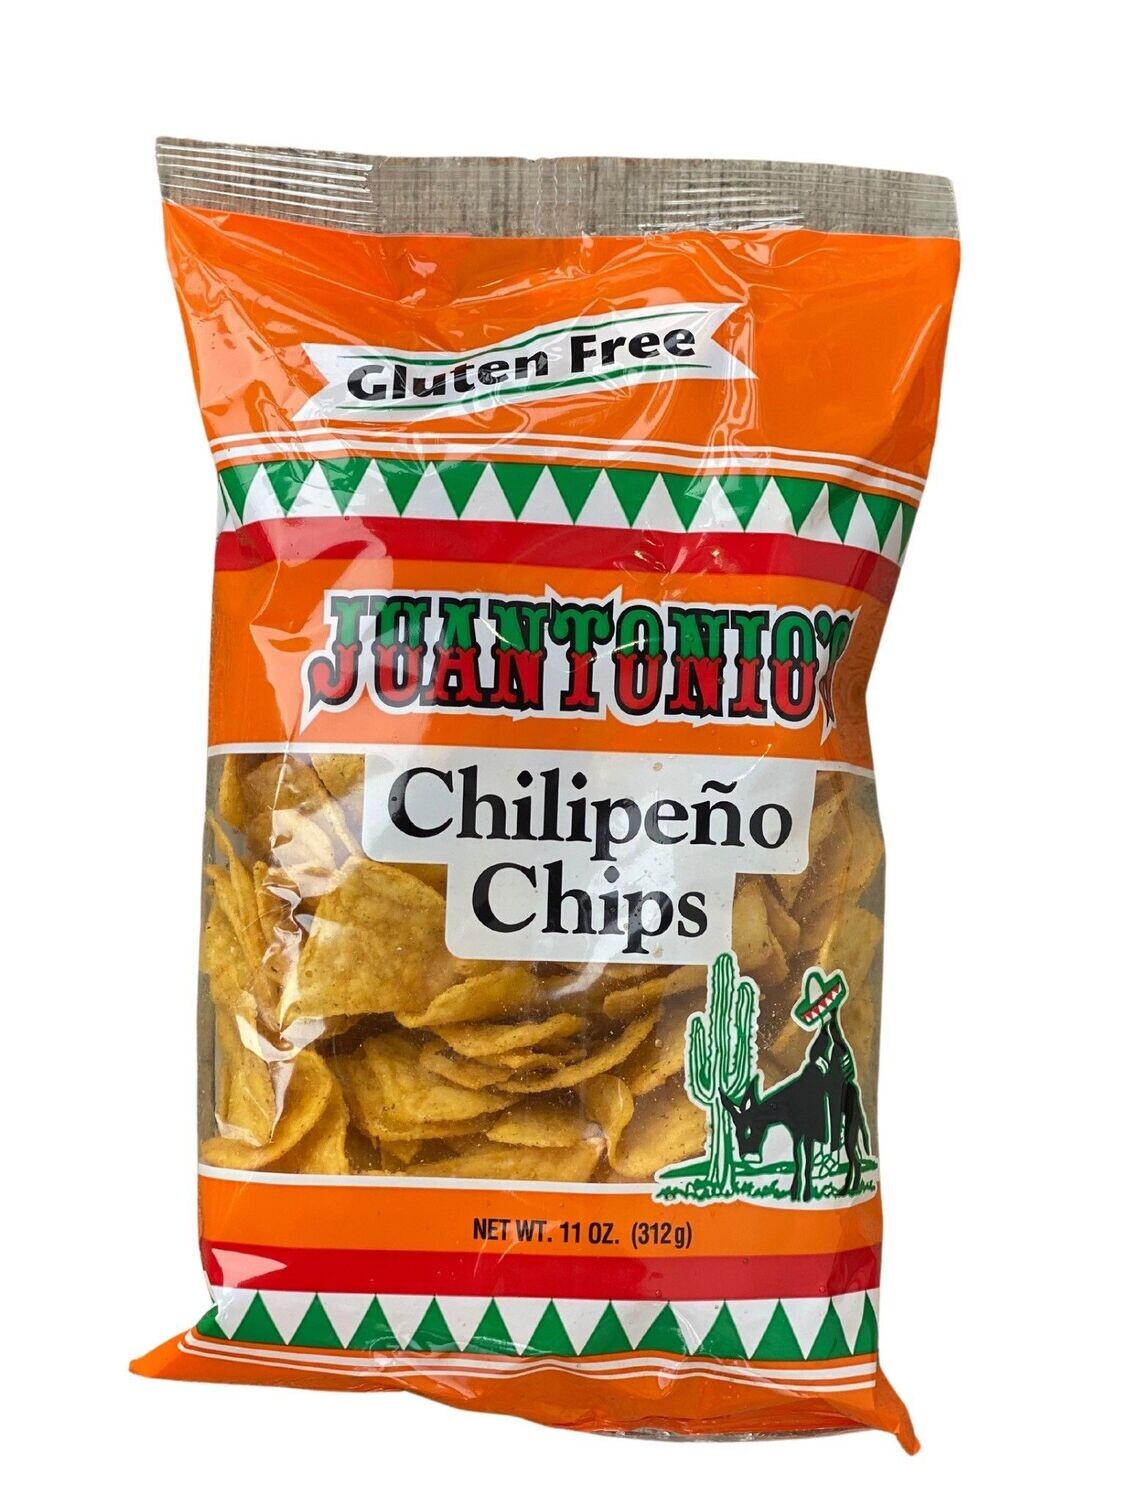 Chilipeno Chips 11oz bag